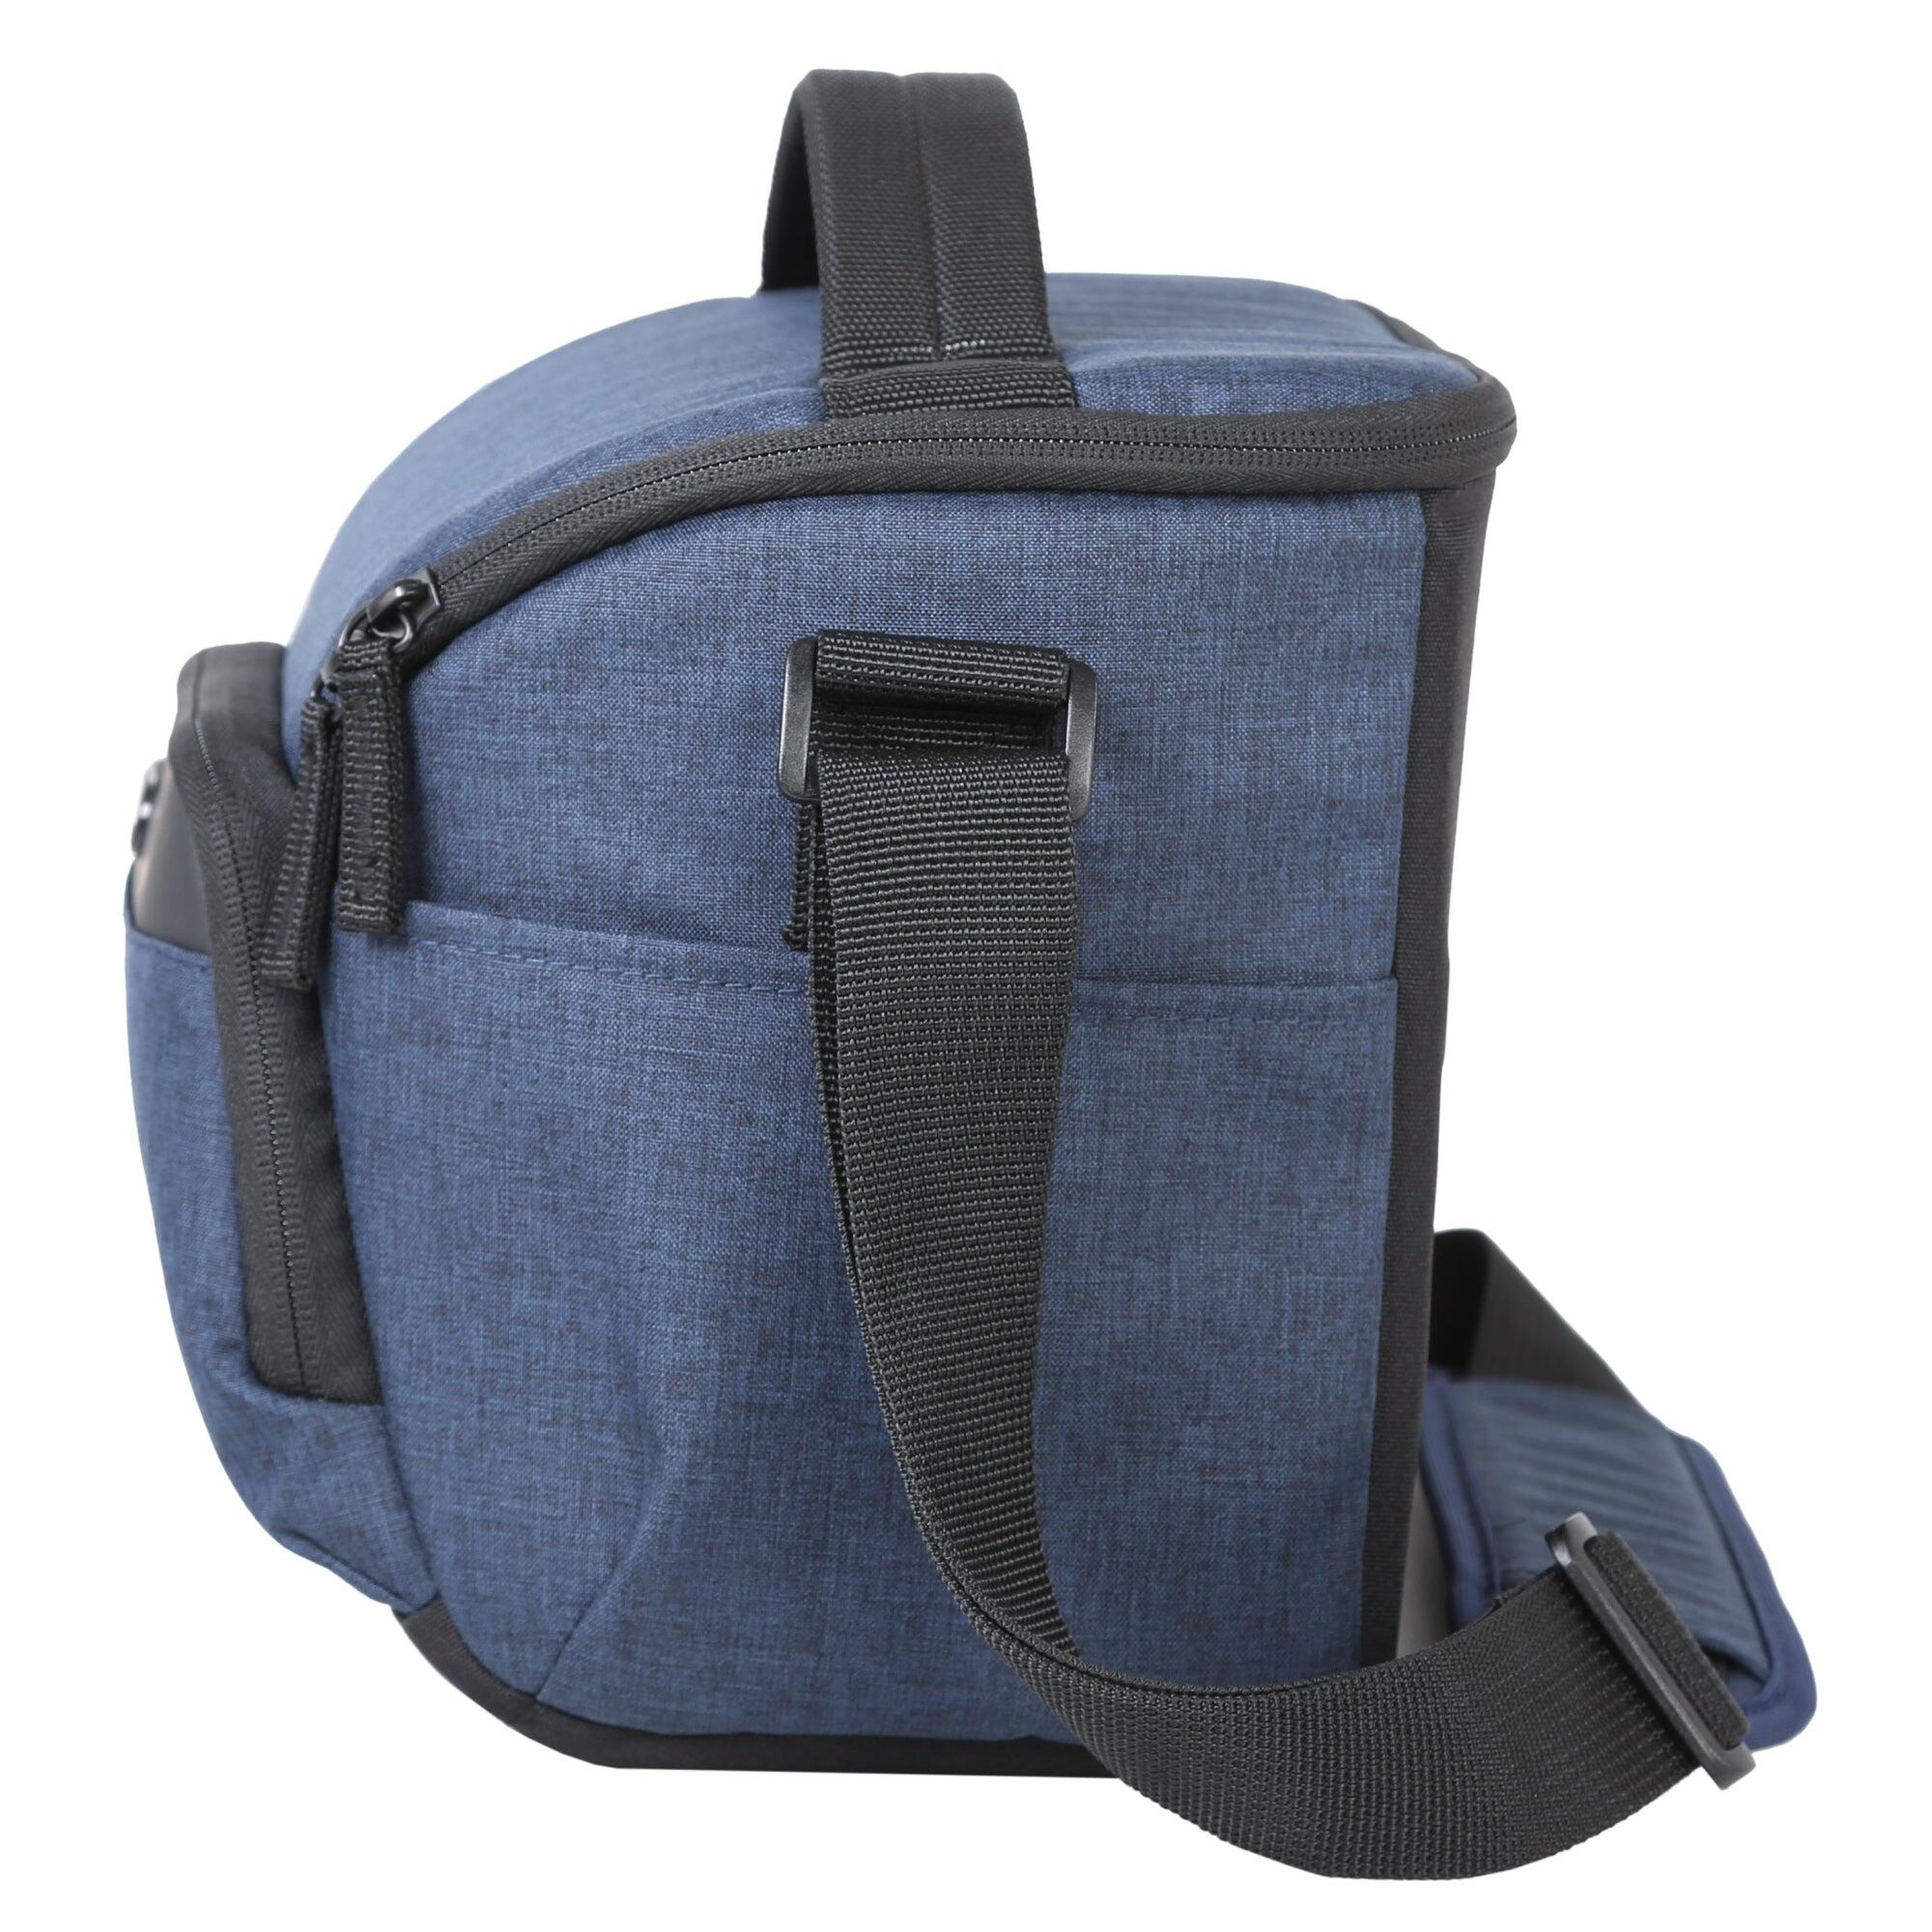 VANGUARD VESTA Aspire 25 NV Shoulder Bag - Blue